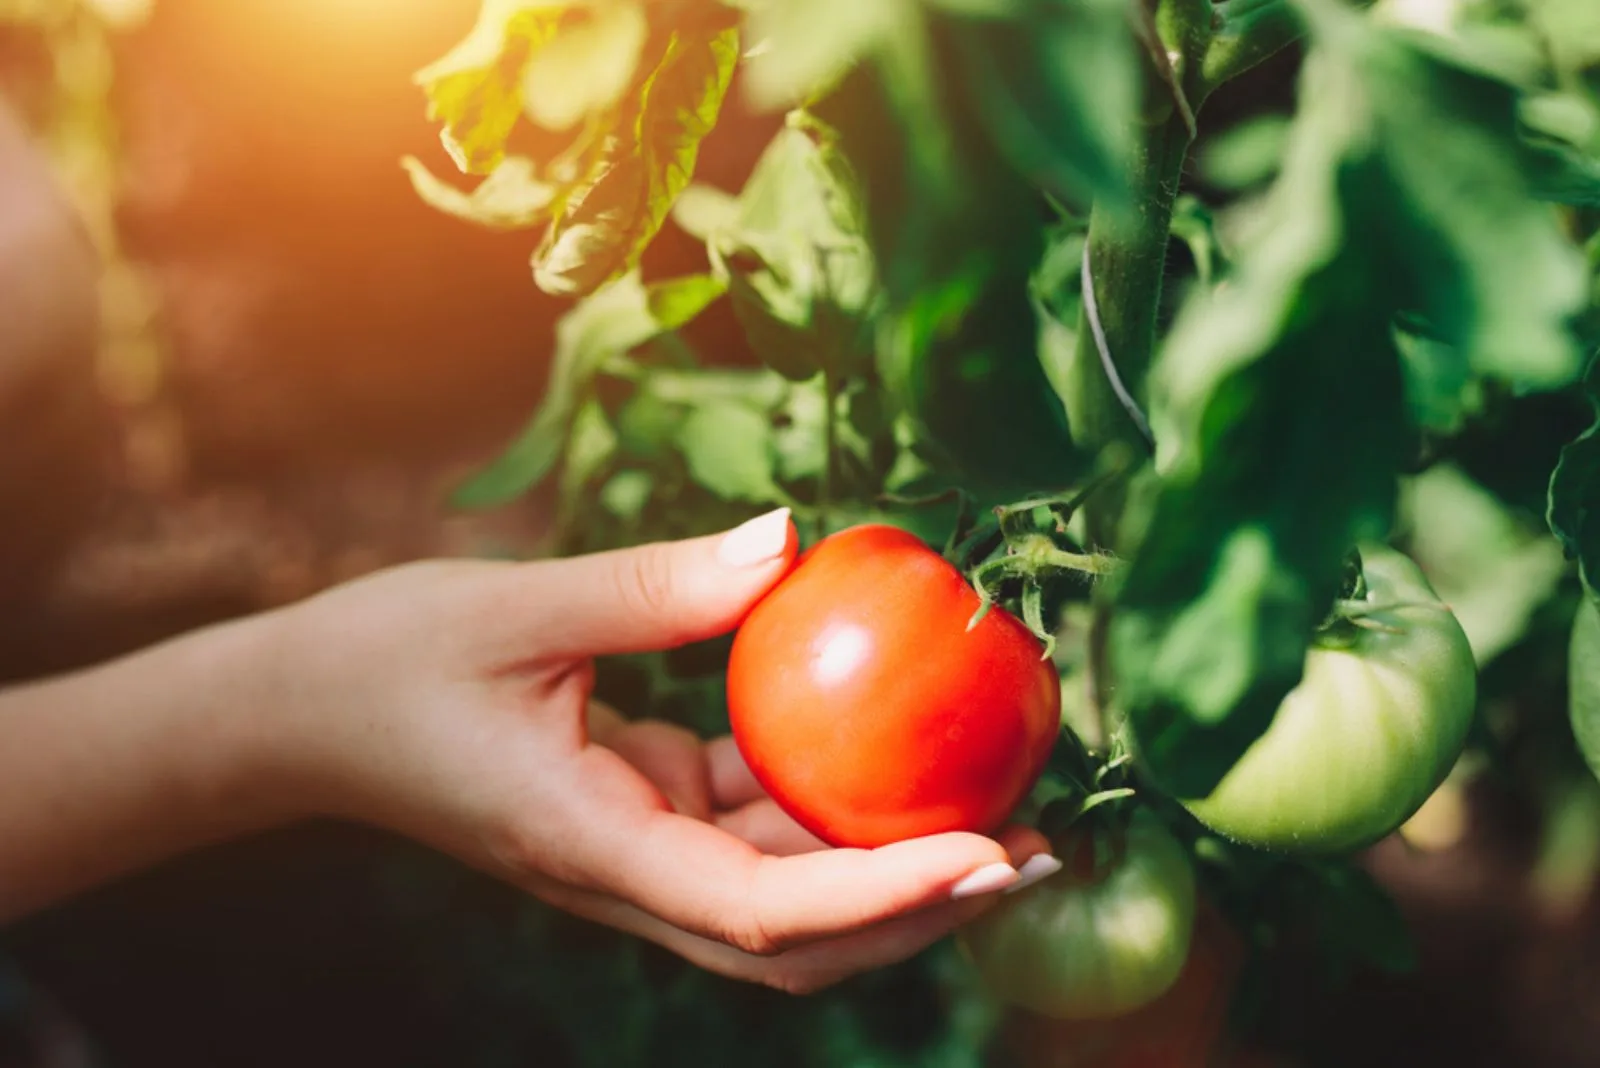 a woman picks a ripe tomato fruit